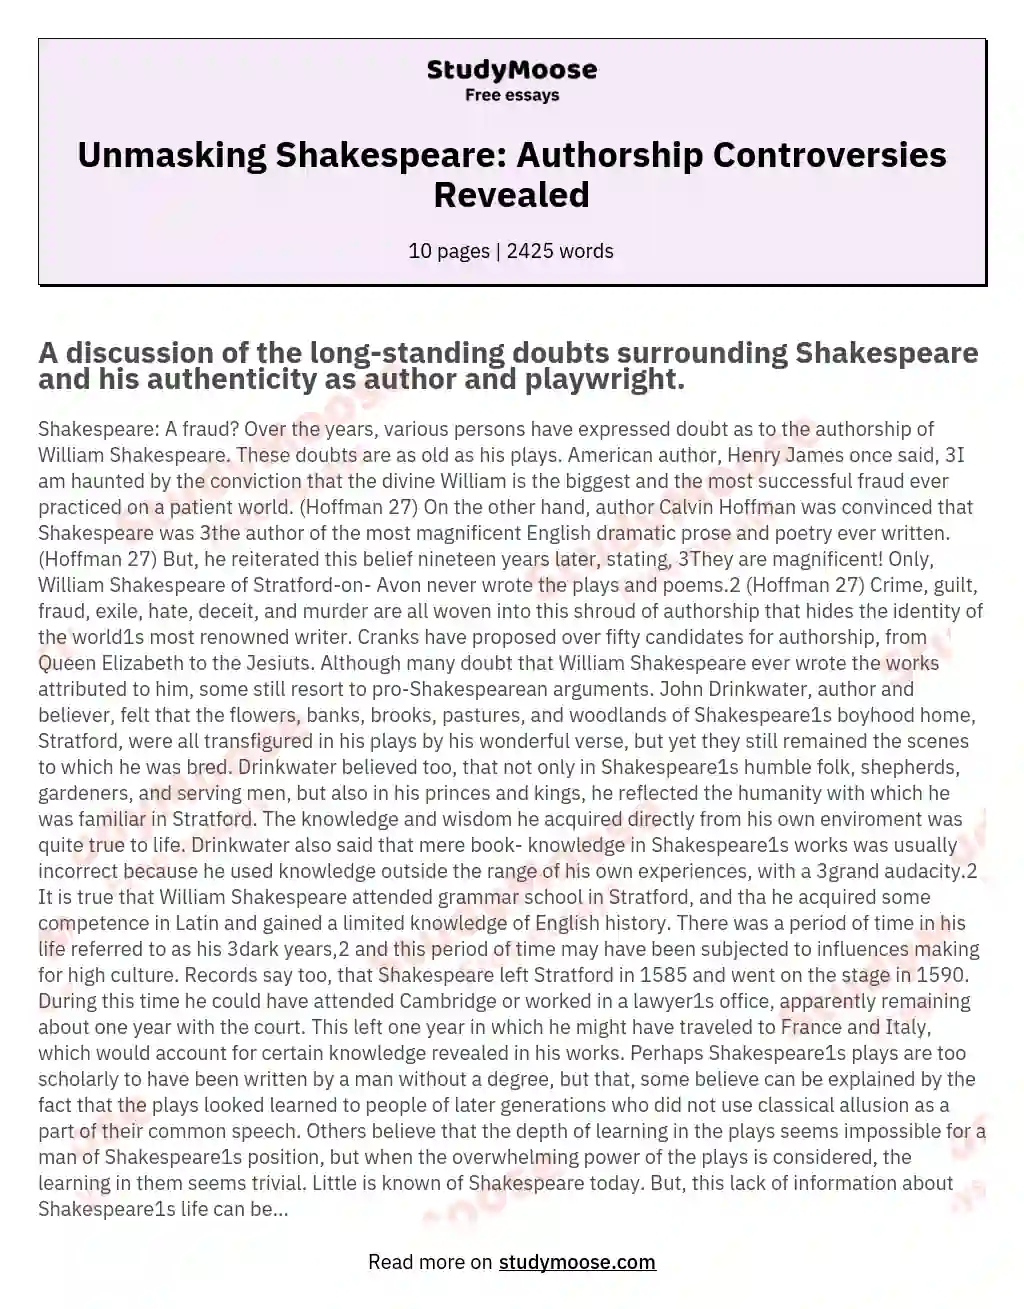 Unmasking Shakespeare: Authorship Controversies Revealed essay